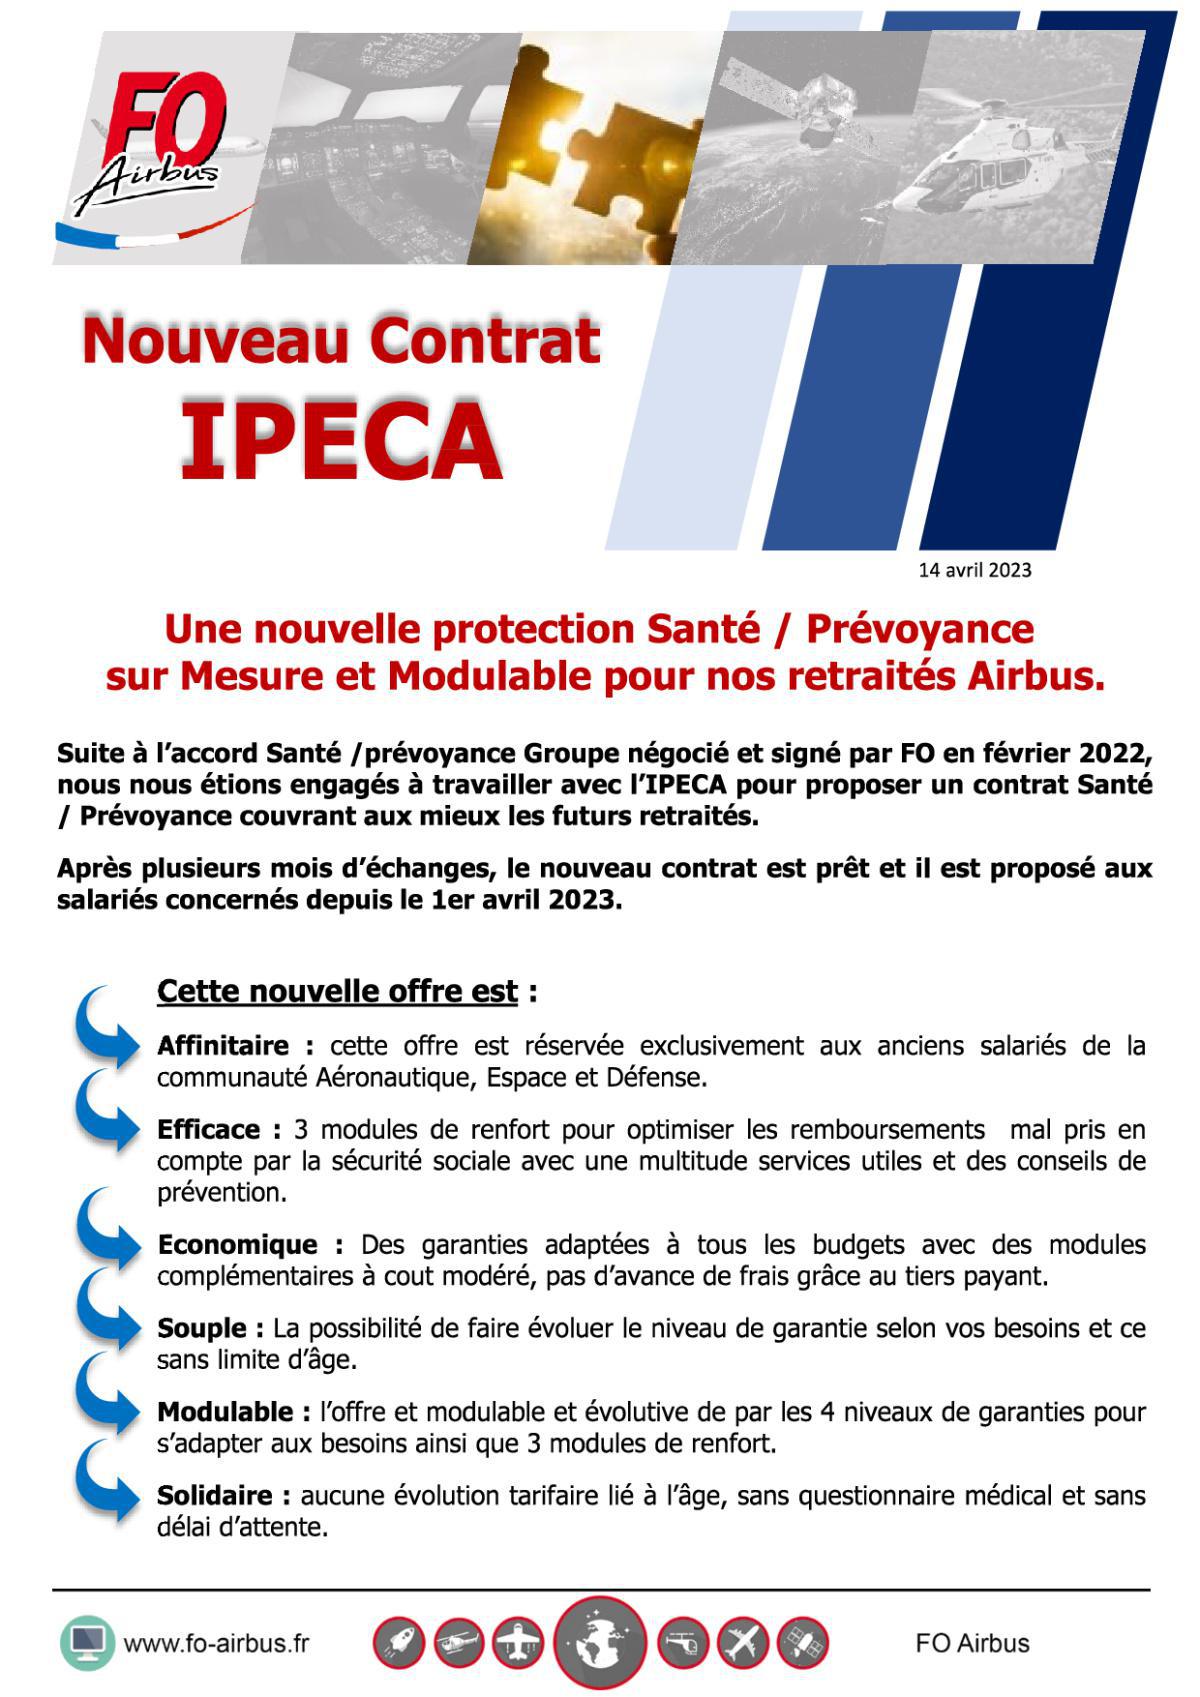 Nouveau Contrat IPECA : Une nouvelle Protection Santé / Prévoyance sur Mesure et Modulable pour nos retraités Airbus